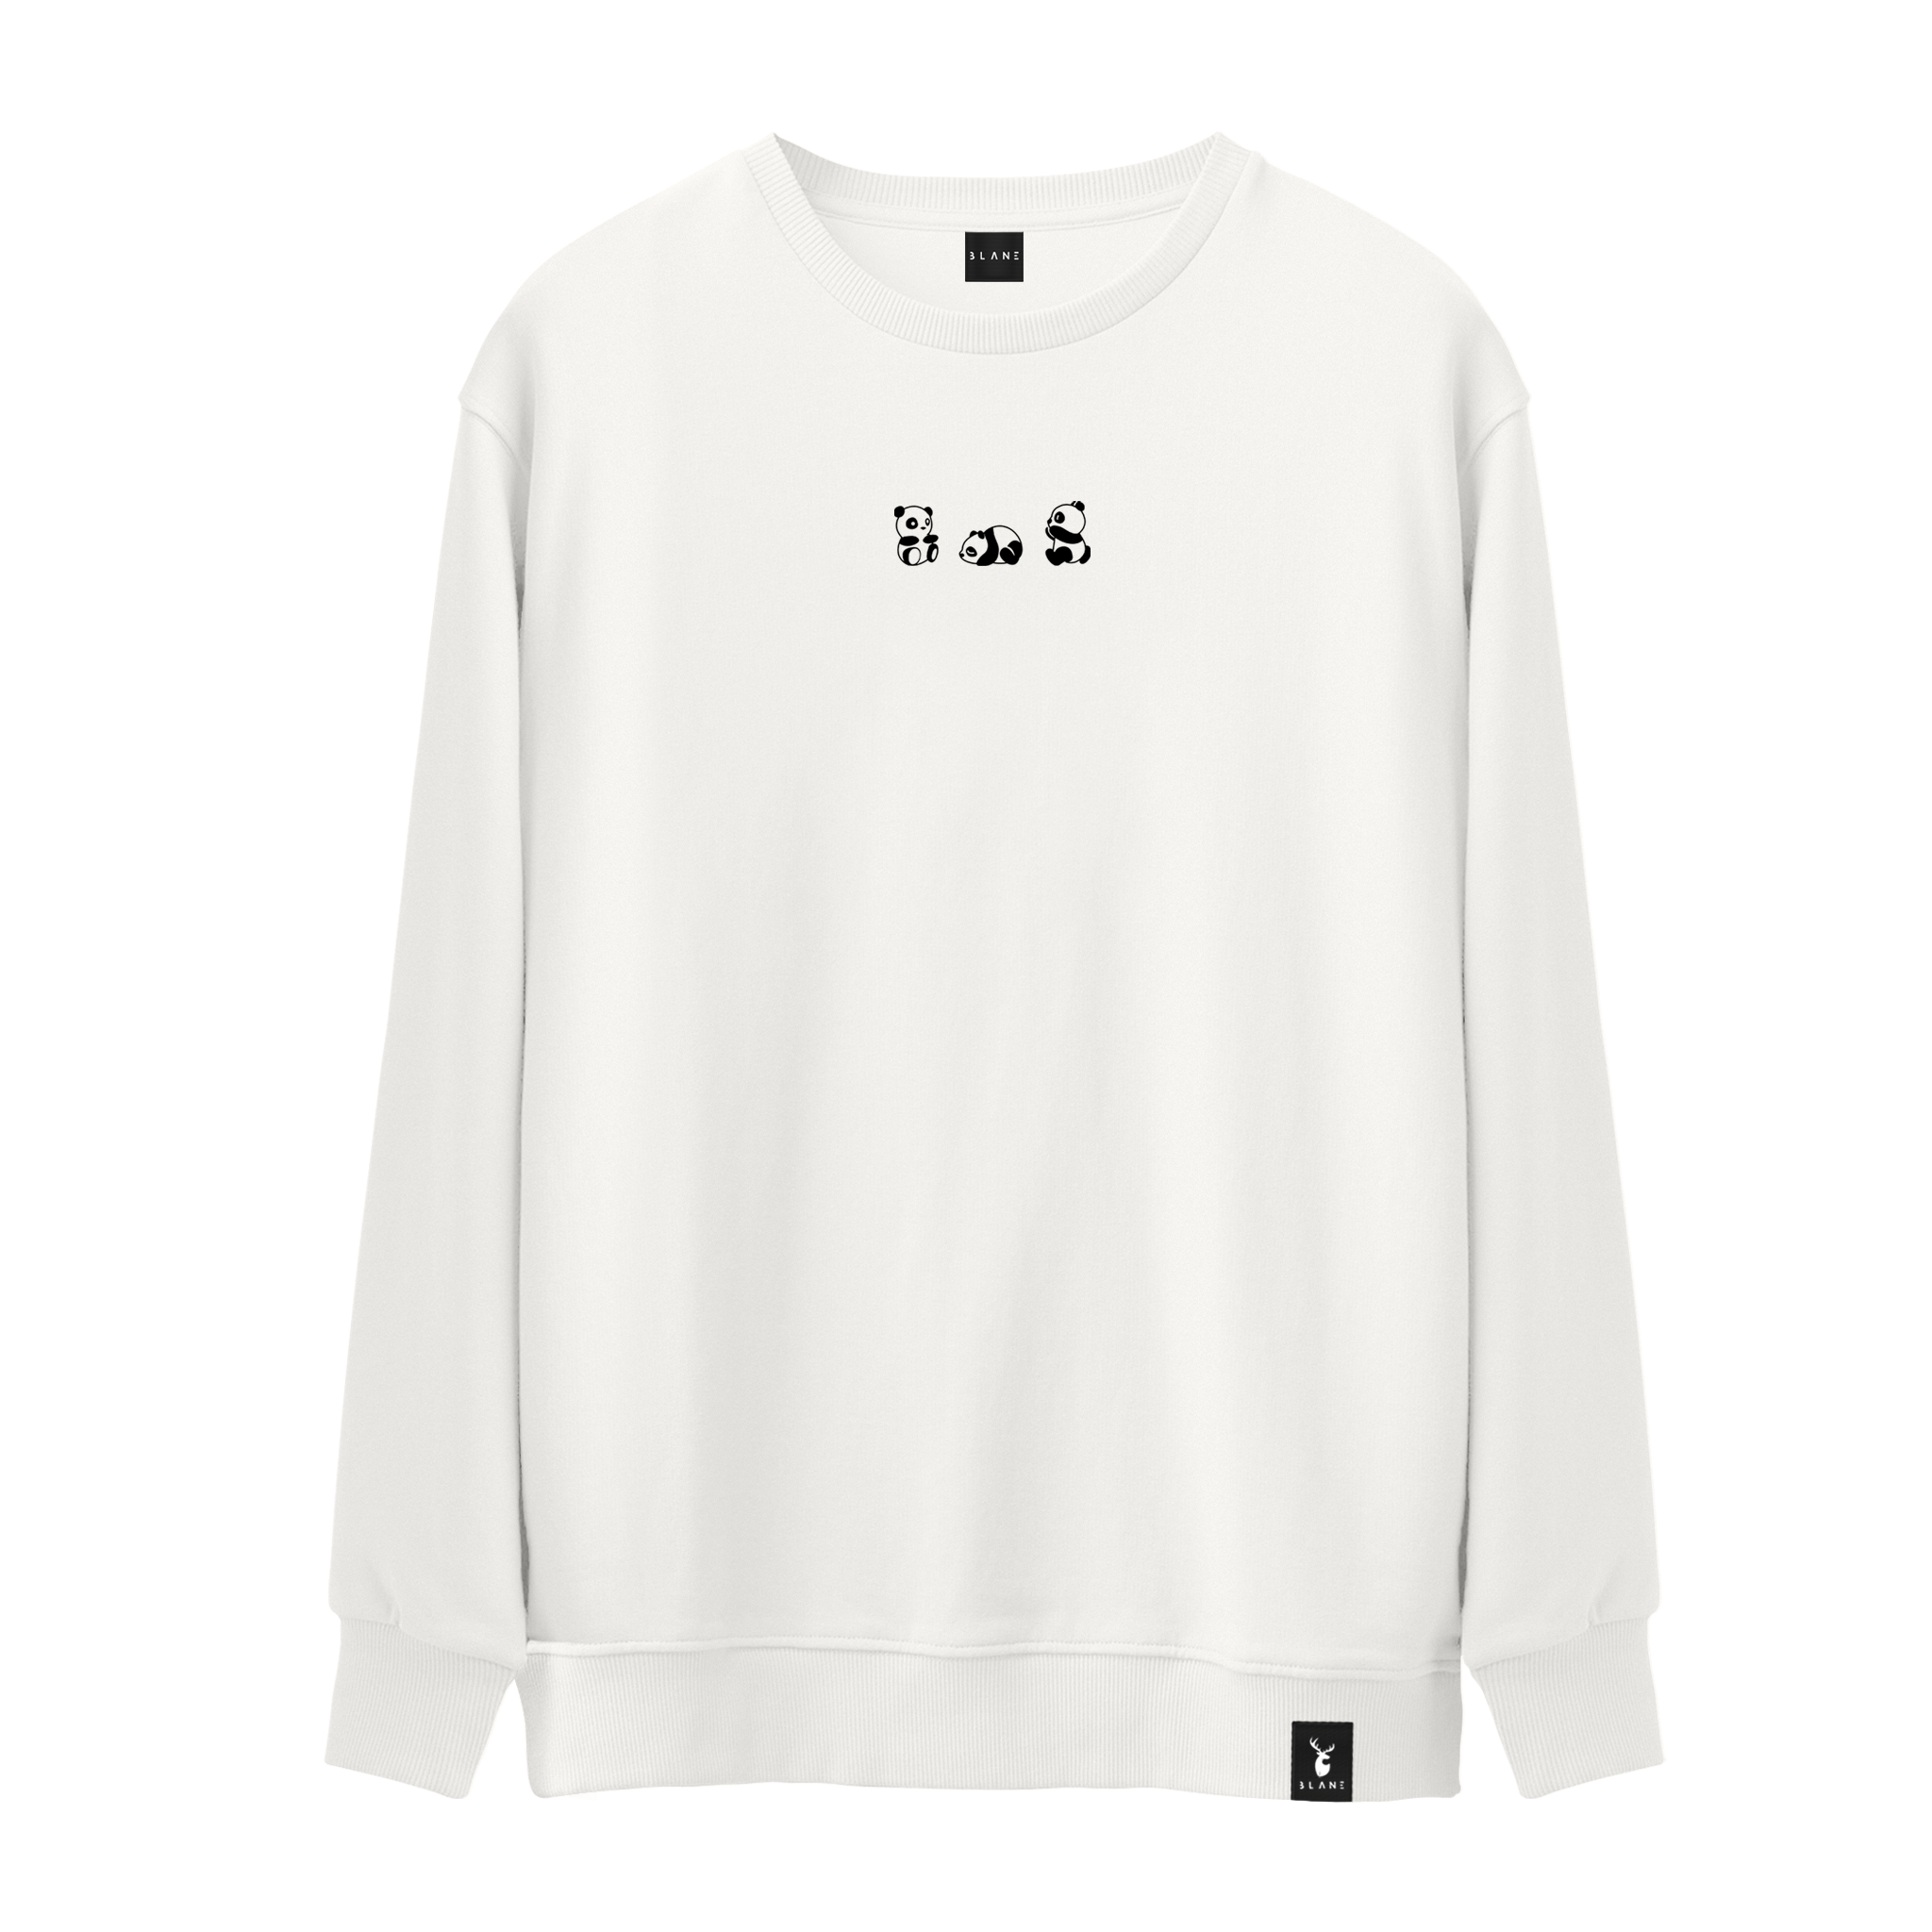 Panda Vibes - Sweatshirt